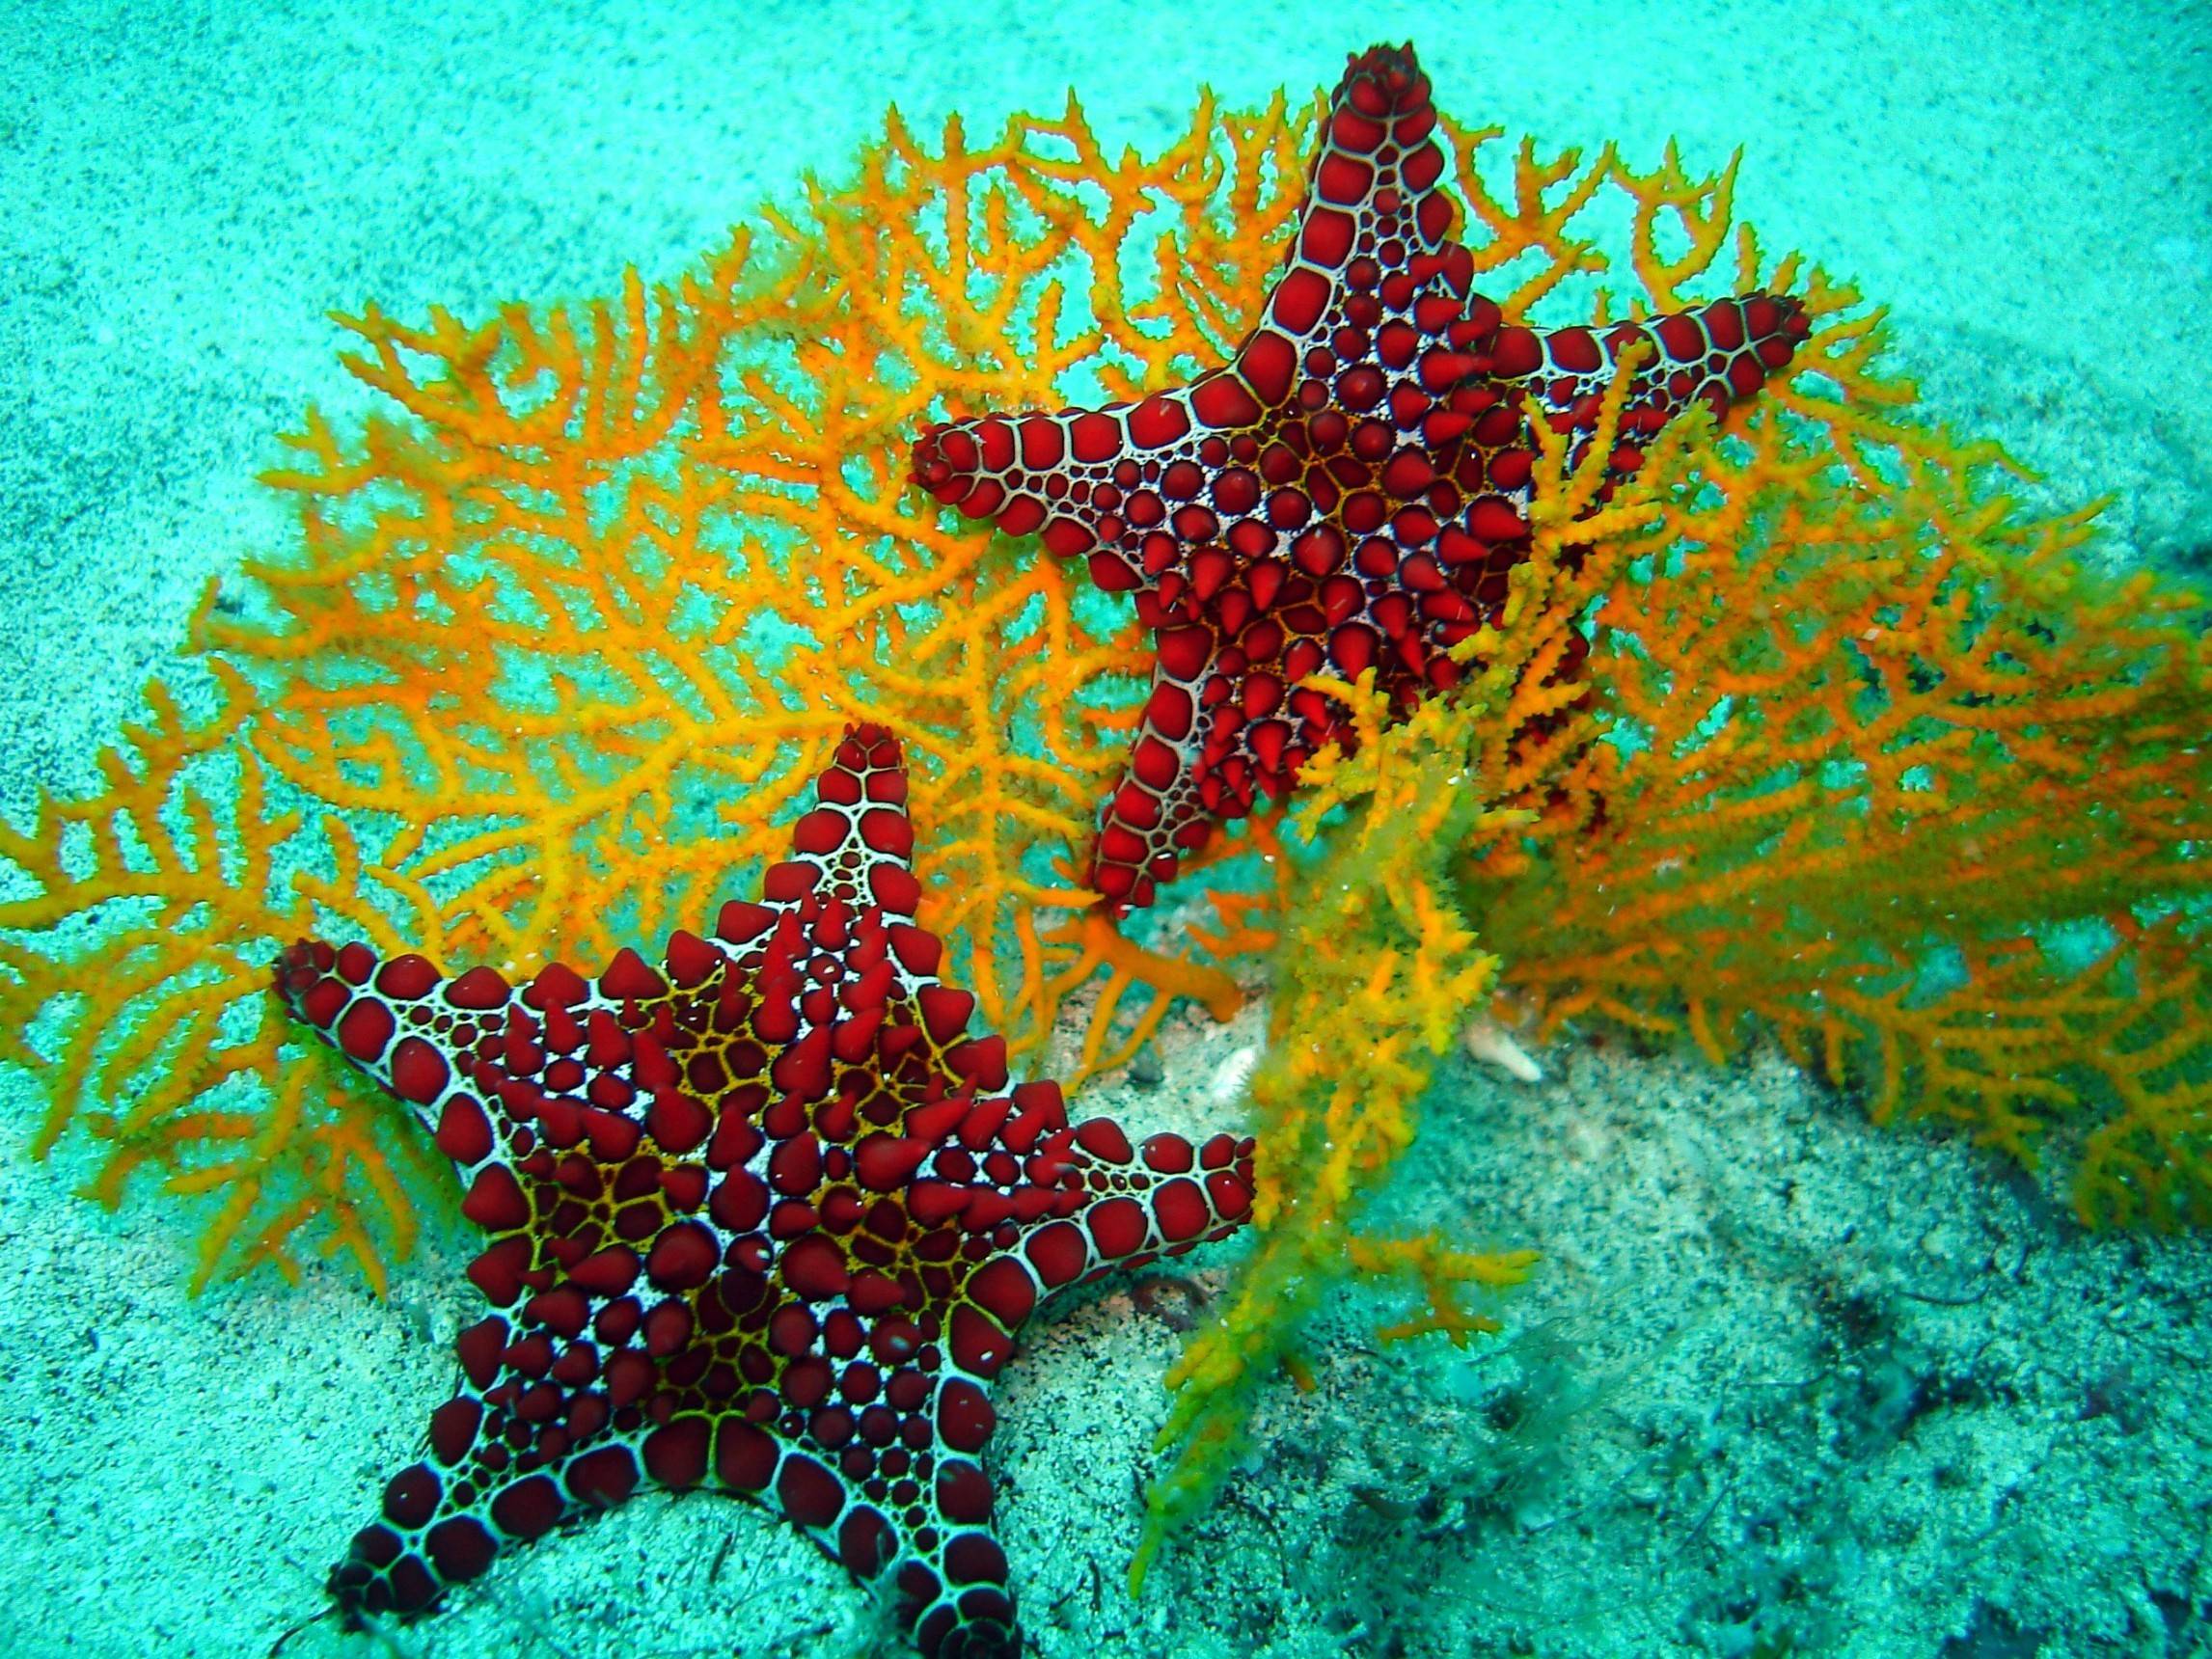 Ocean Life and Under Water HD Desktop Wallpaper, Beautiful Sea Animal